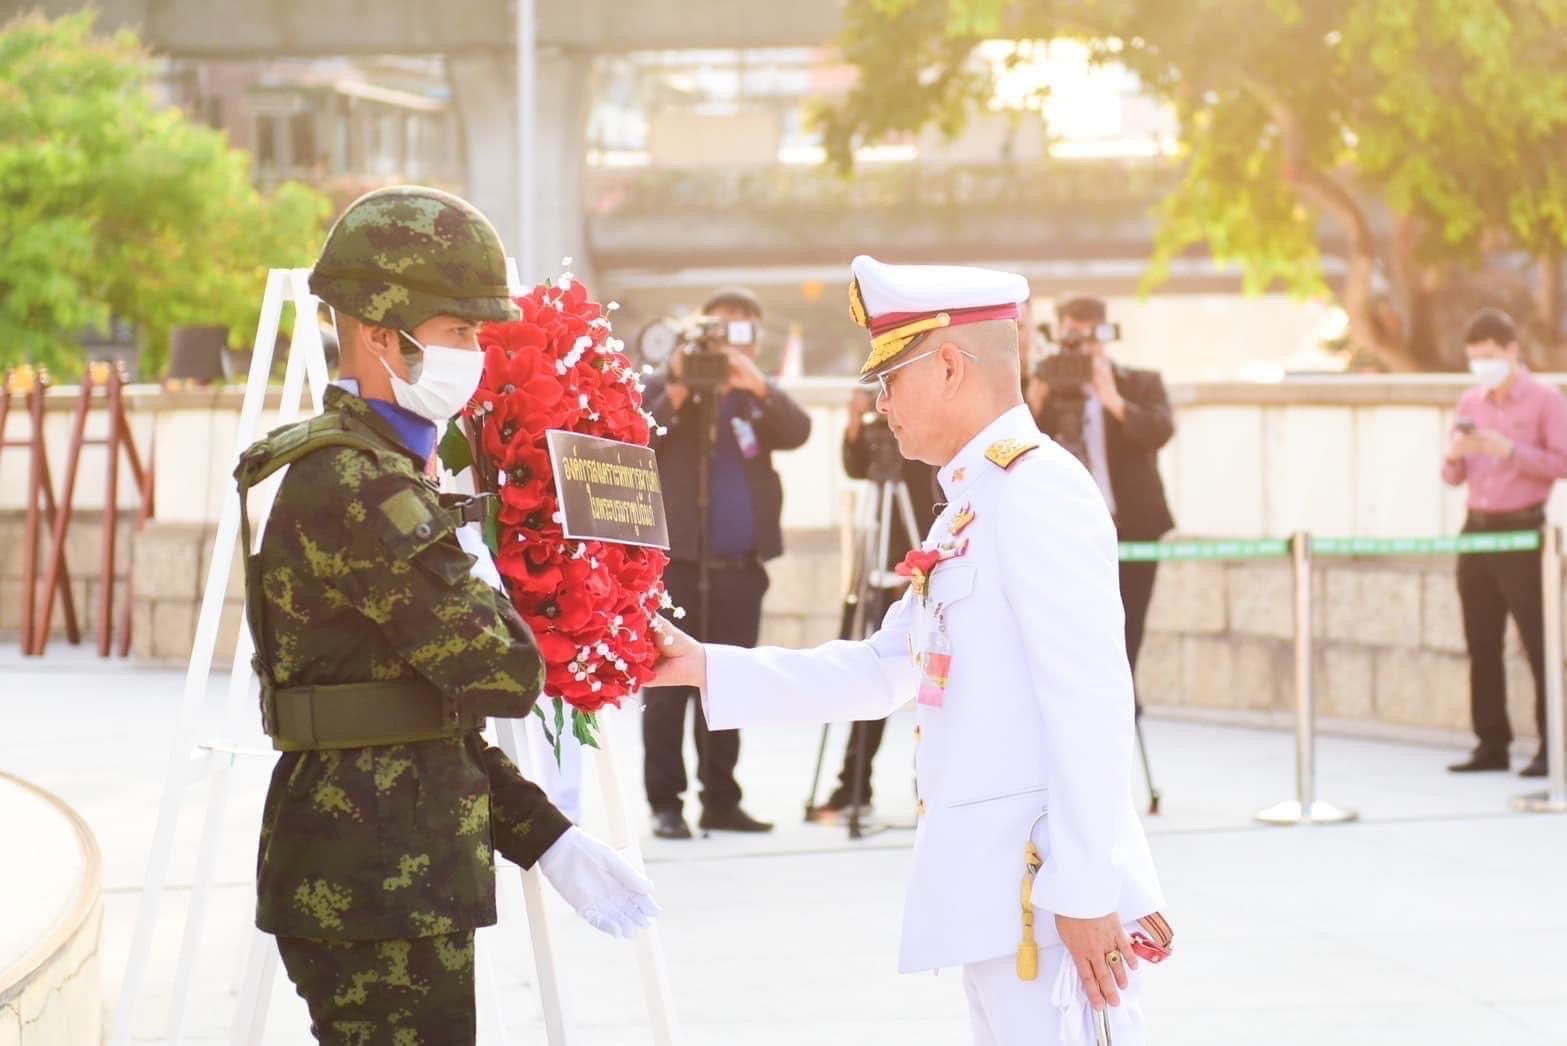  “เชิดชูเกียรติทหารกล้า ๓ กุมภาพันธ์ วันทหารผ่านศึก”